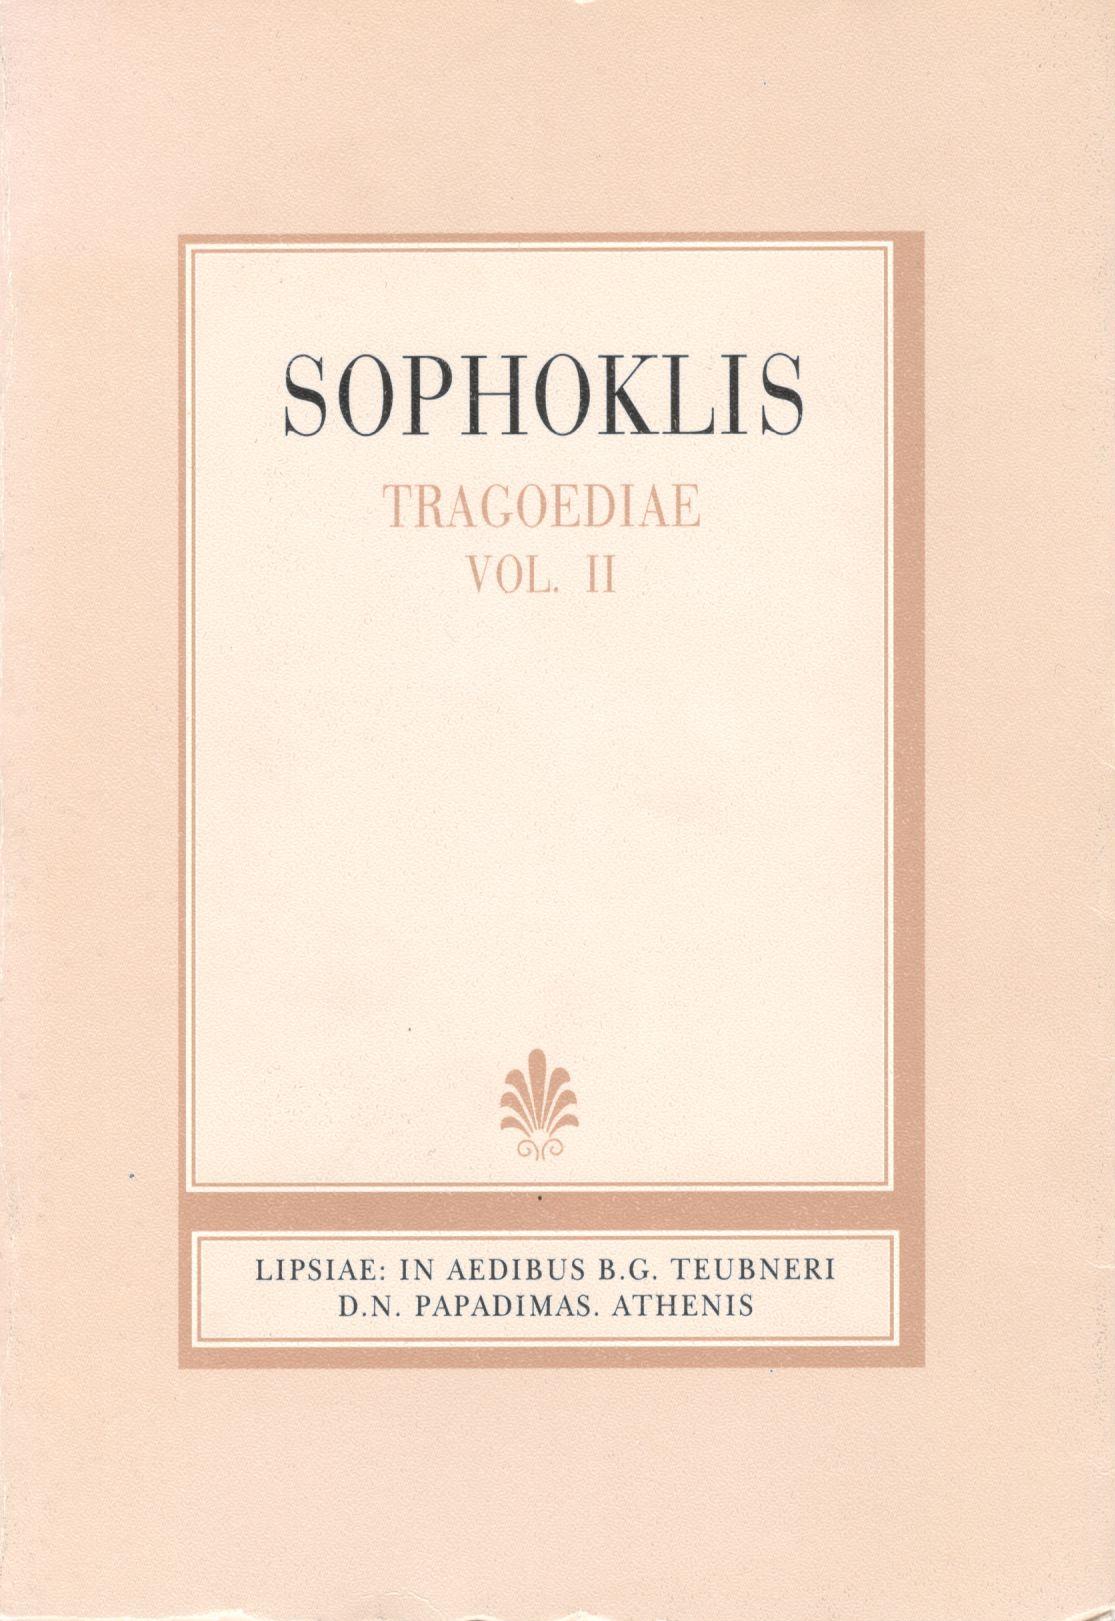 Sophoclis, Tragoediae, Vol. II, [Σοφοκλέους, Τραγωδίαι, τ. Β']